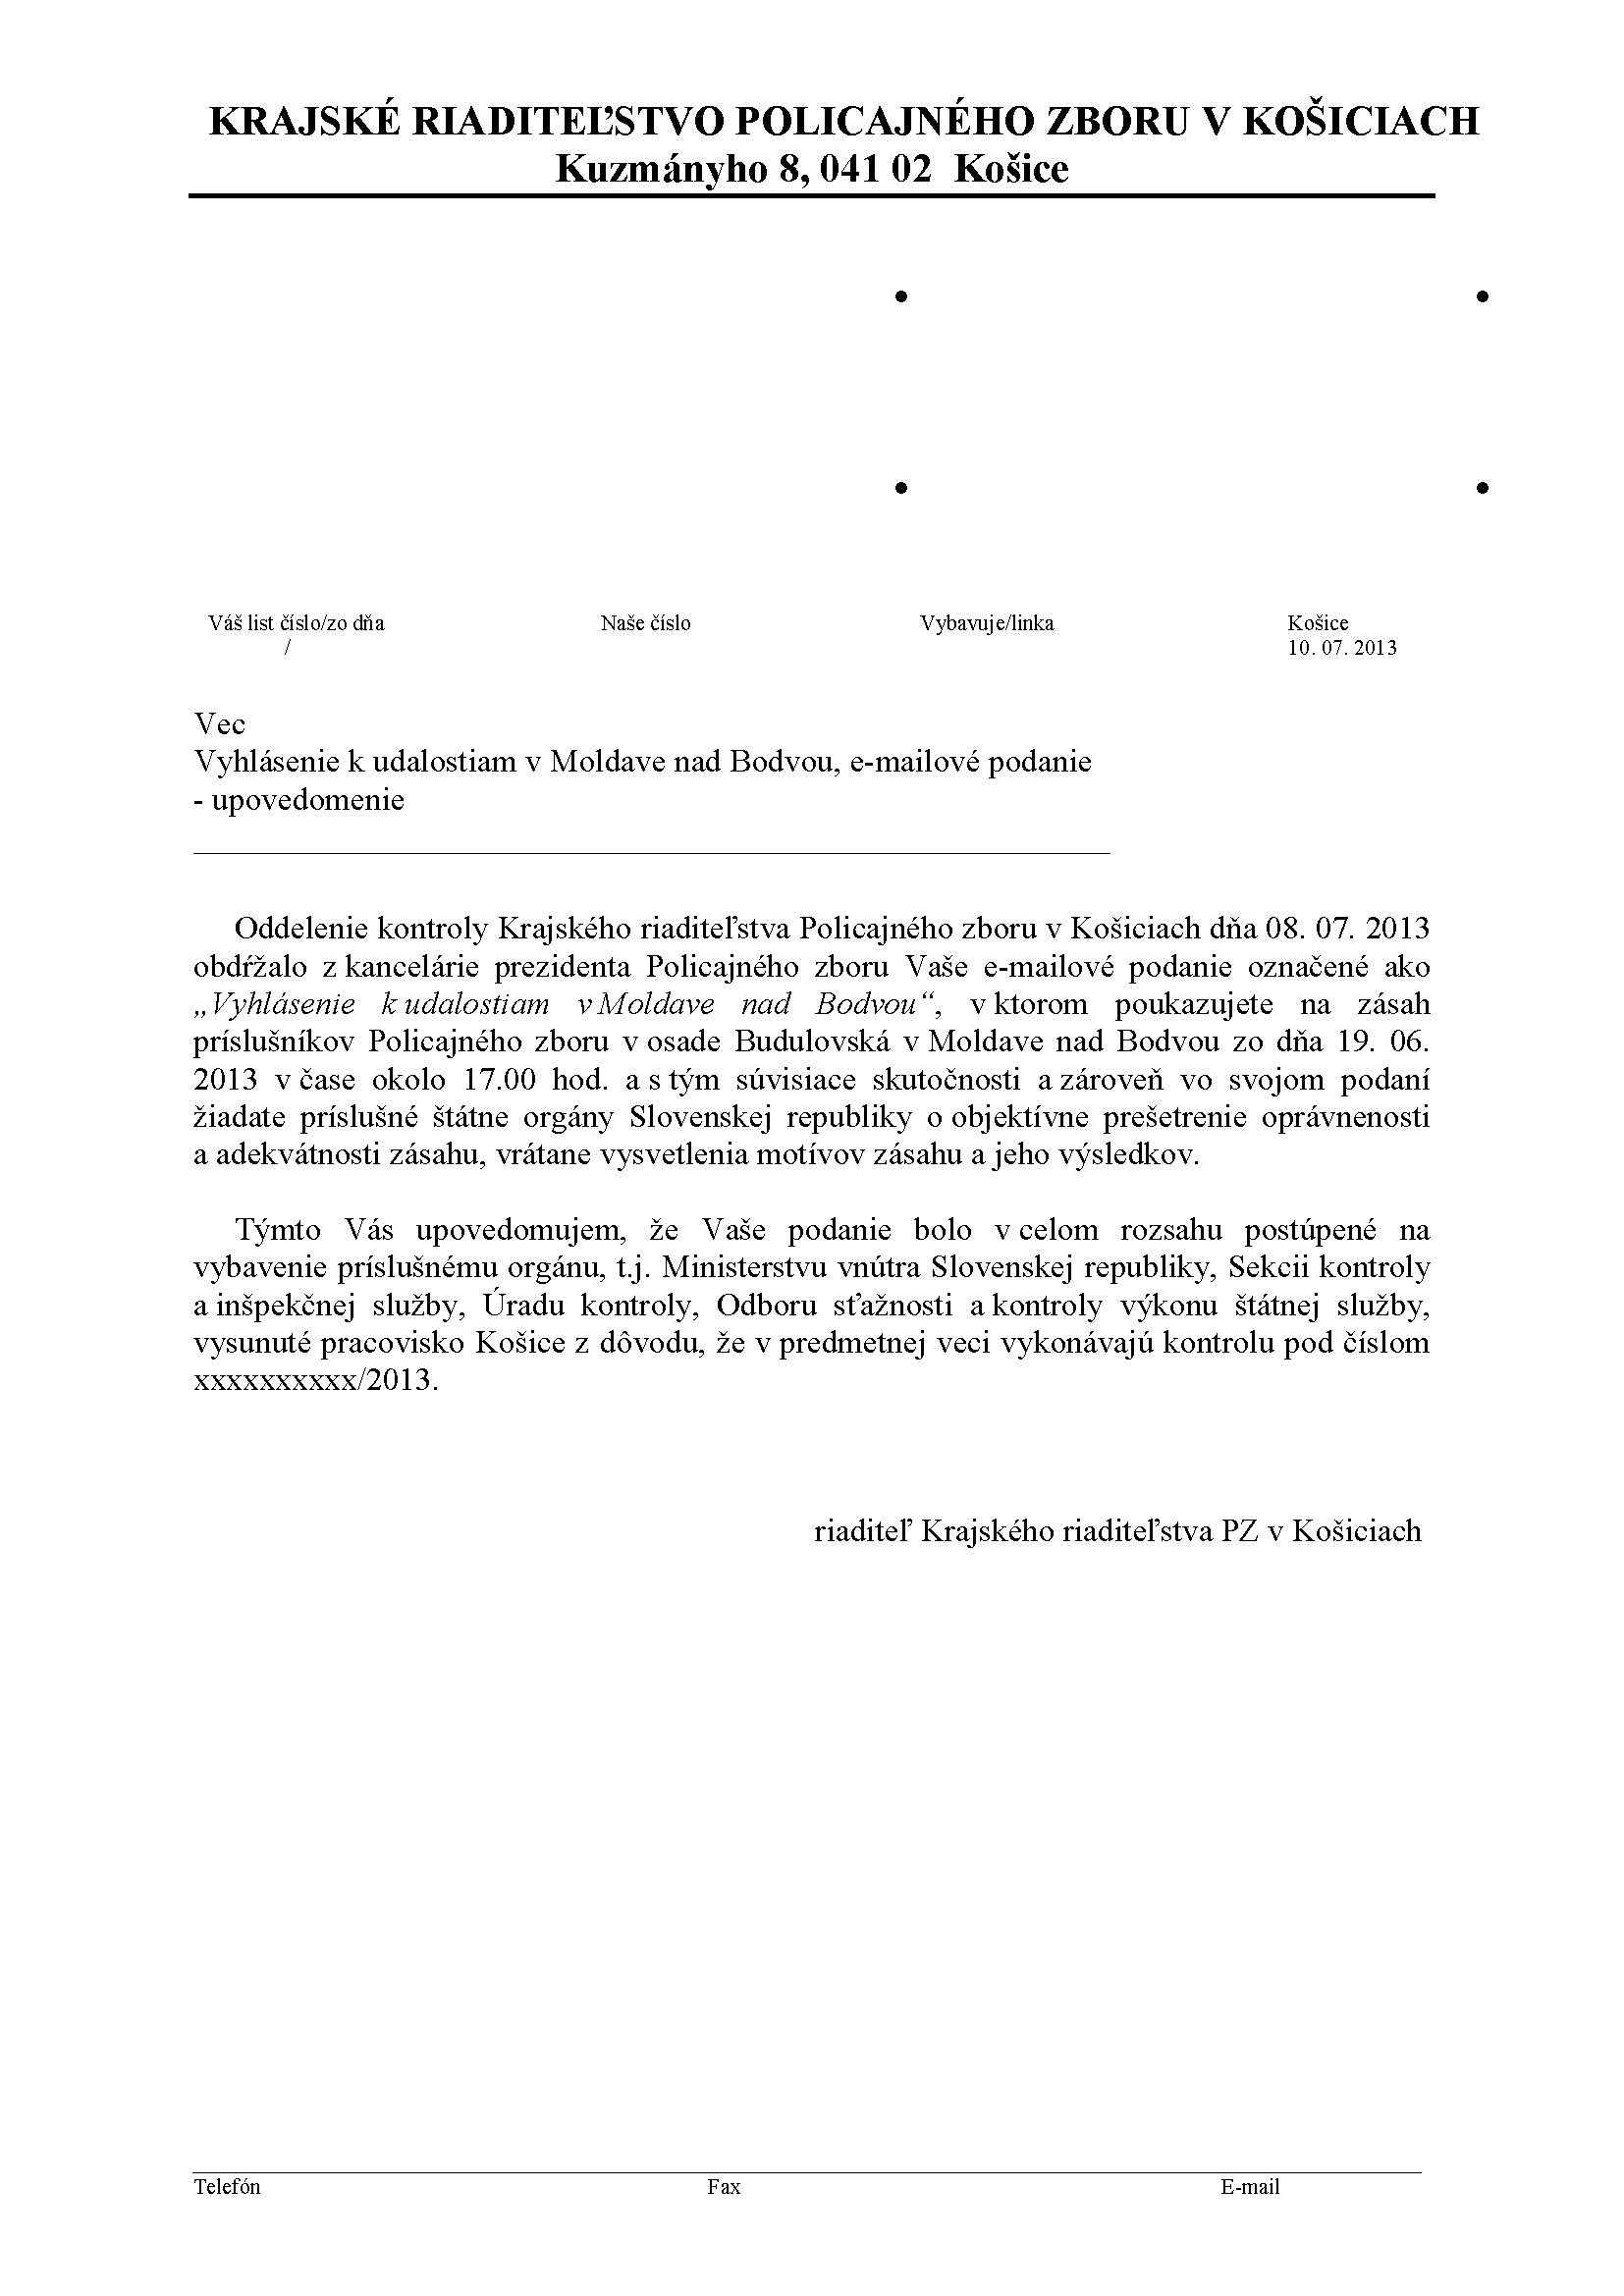 Magna Carta Worksheet with Reakcia Policajneho Riaditelstva Na Vyhlasenie K Zasahu V Moldave